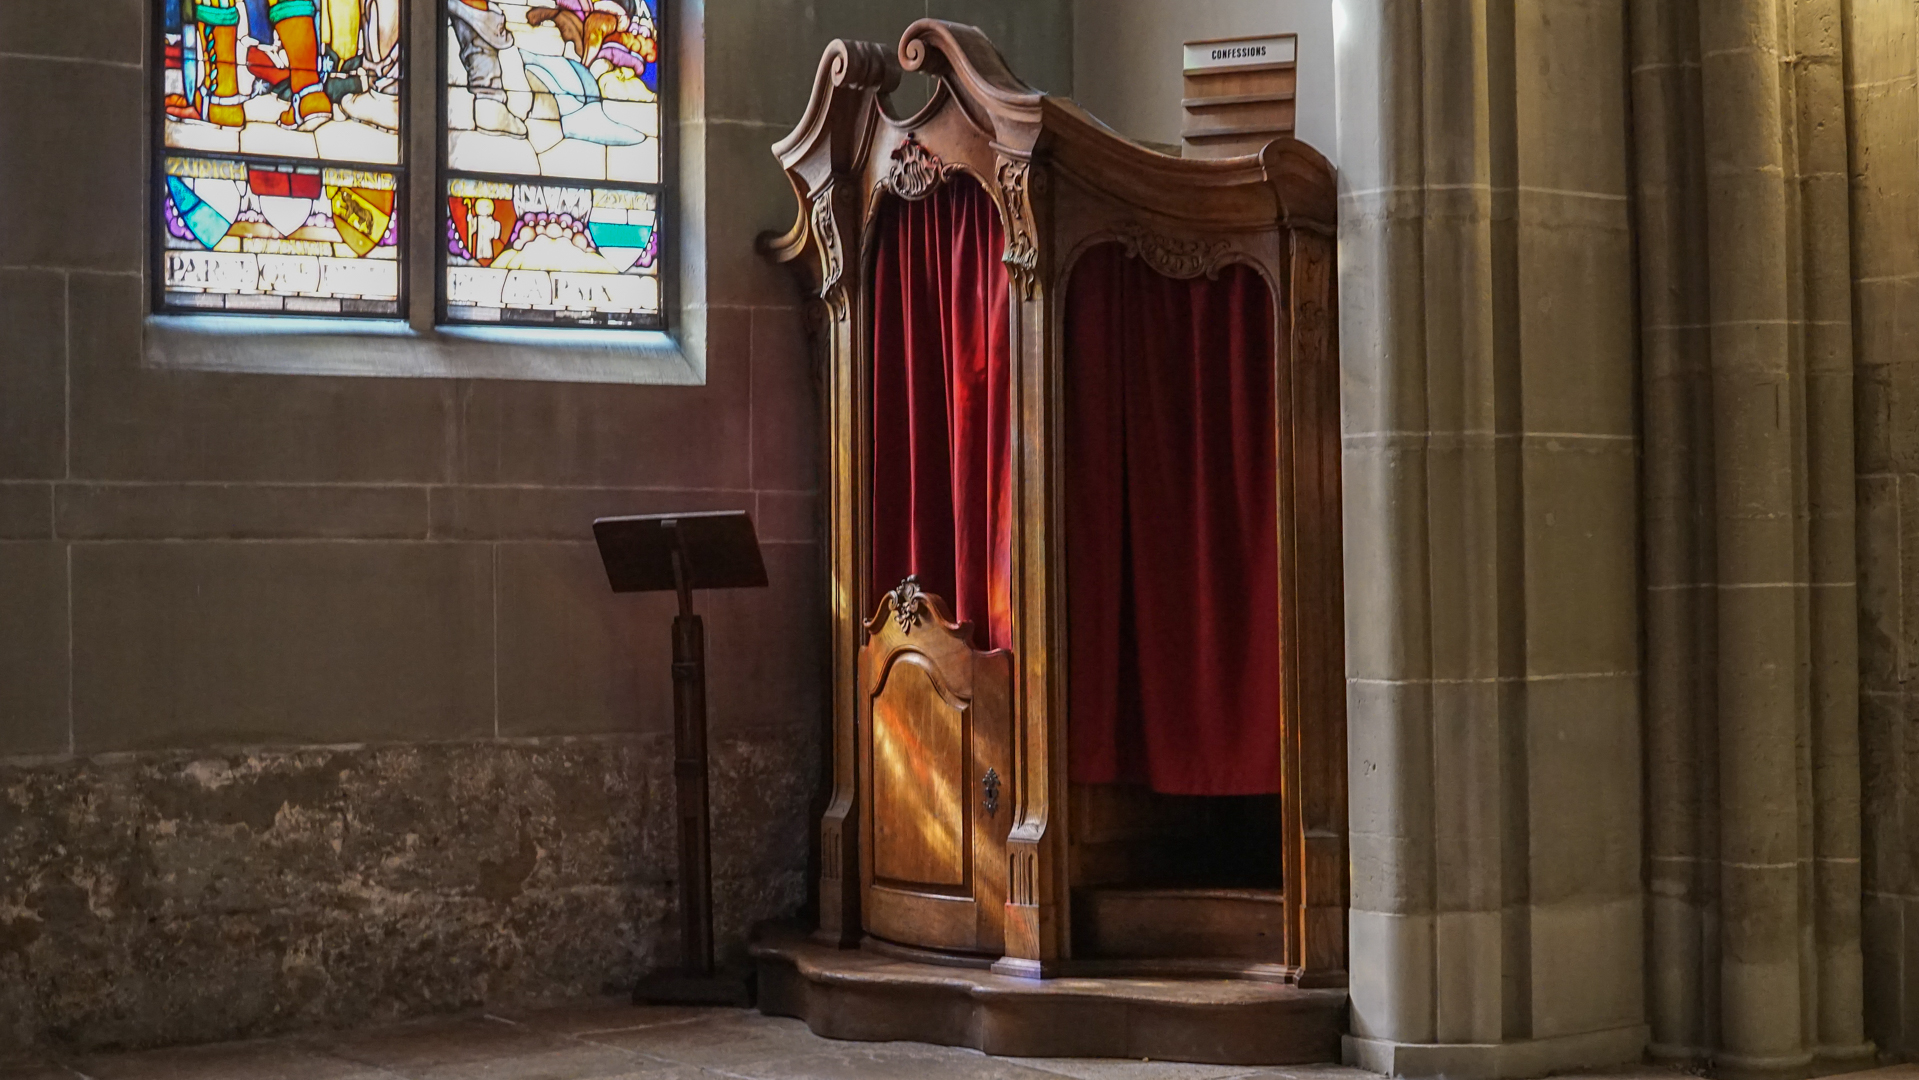 Un confesionnal qui restera vide durant la Semaine-Sainte | Cathédrale St-Nicolas de Fribourg | © Maurice Page